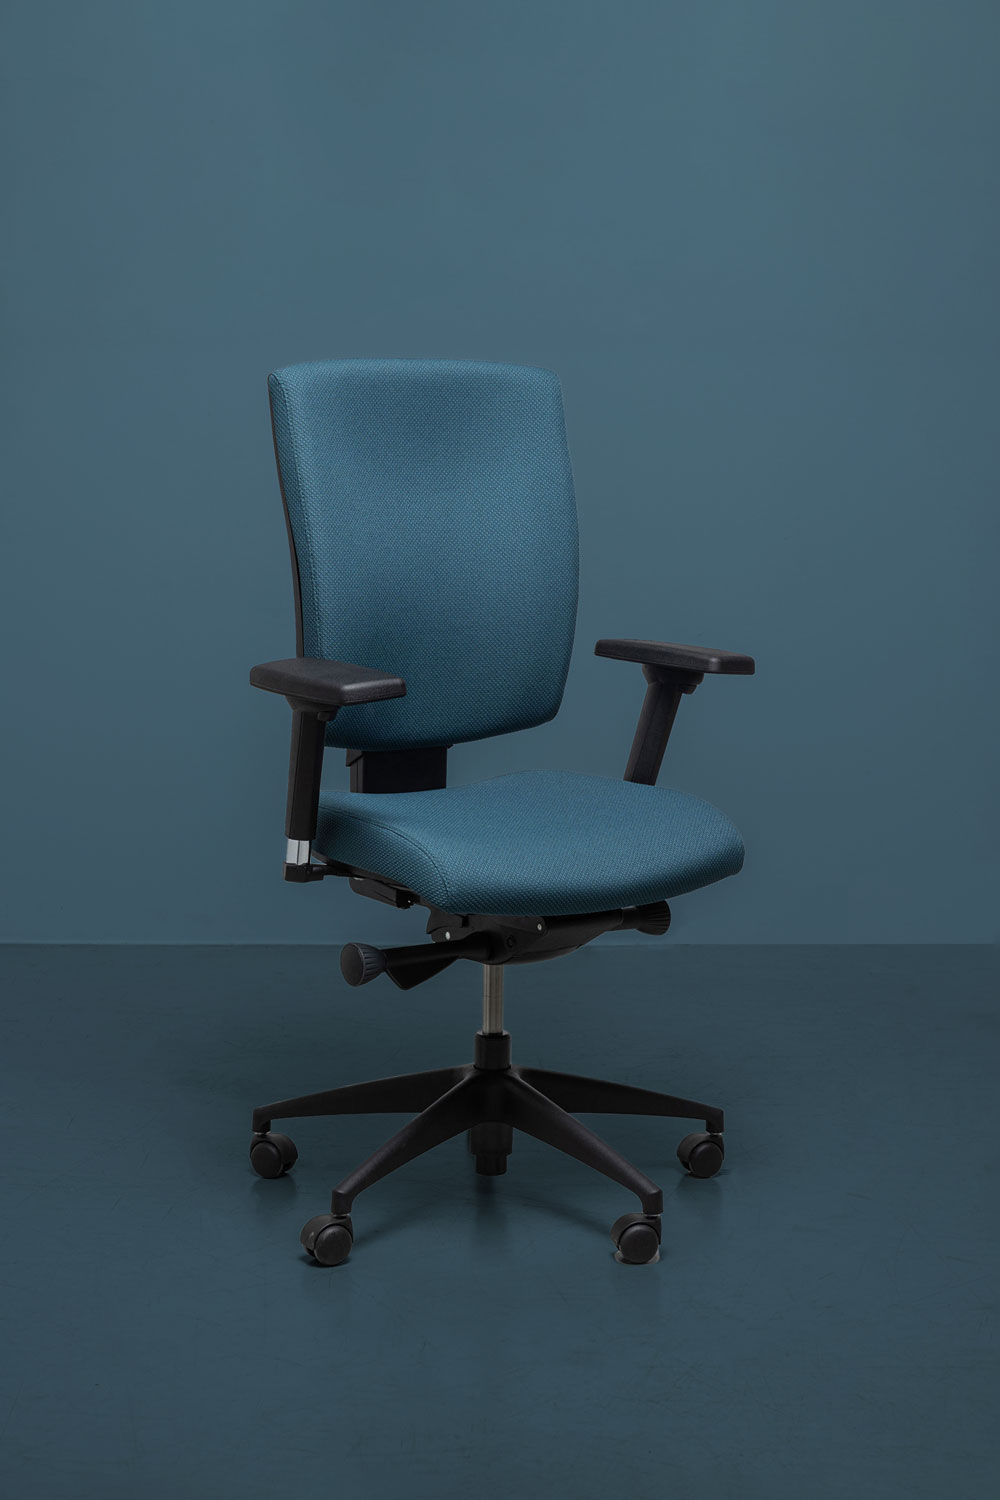 Chaise de Bureau Confortable en Tissu GRAFT (Noir ou Gris)